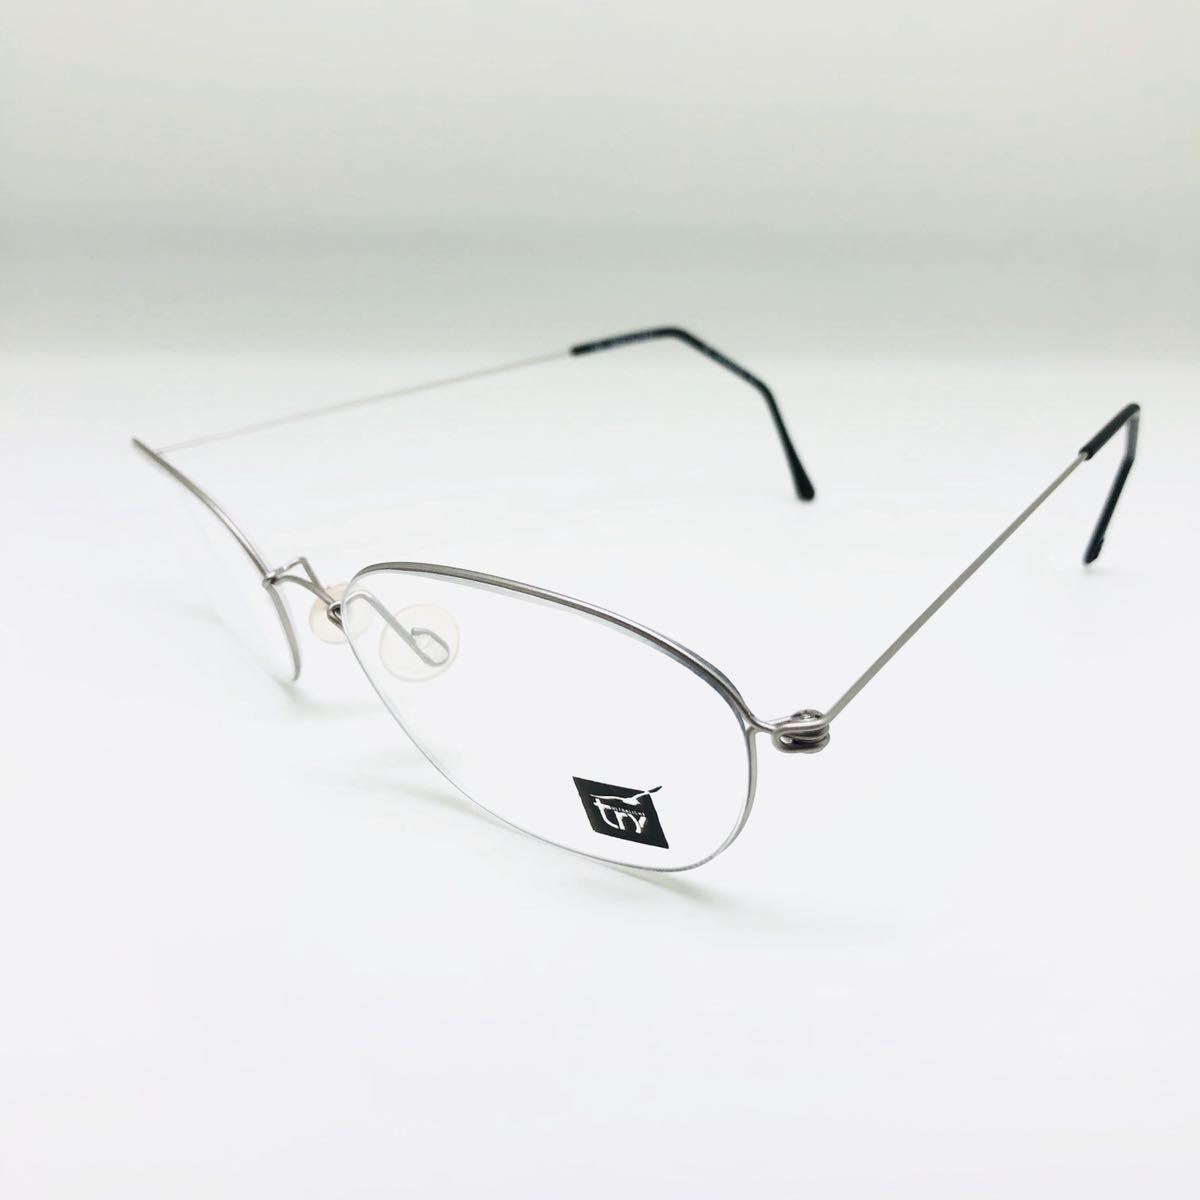 新品 TRY トライ イタリア製 ブランド 眼鏡 メガネ オシャレ 上品 綺麗